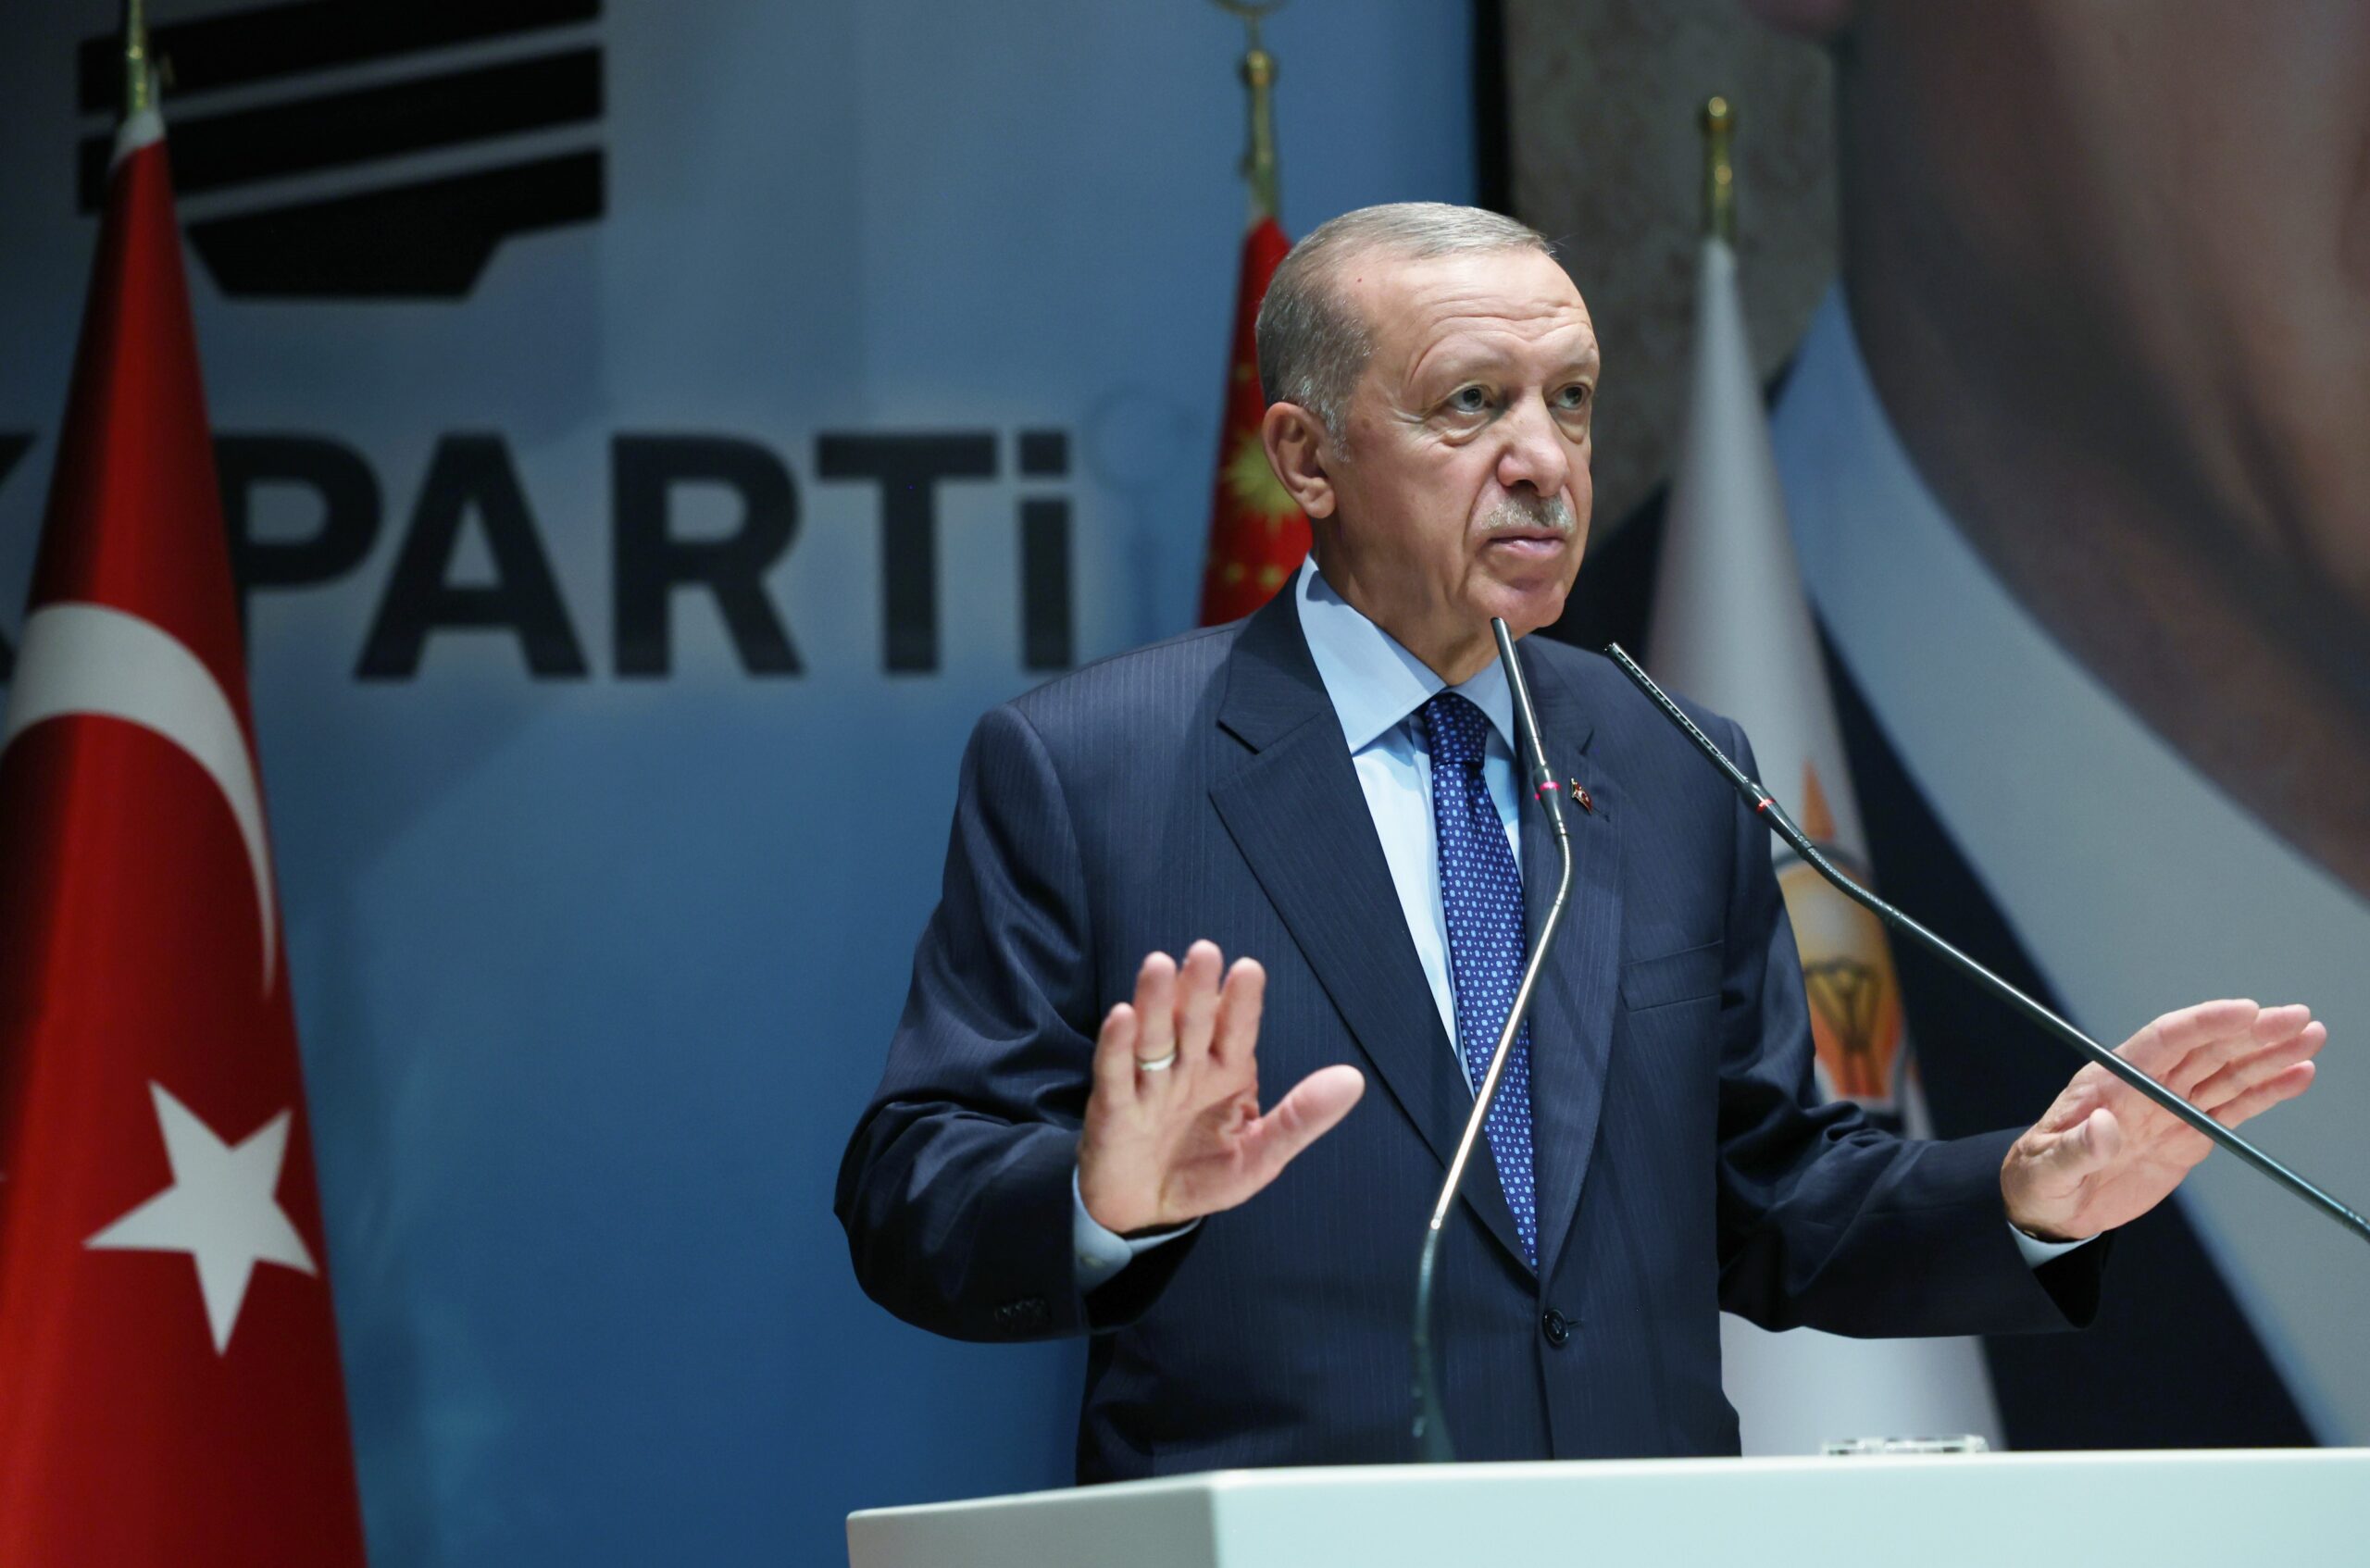 Cumhurbaşkanı Erdoğan’dan gündeme dair önemli açıklamalar